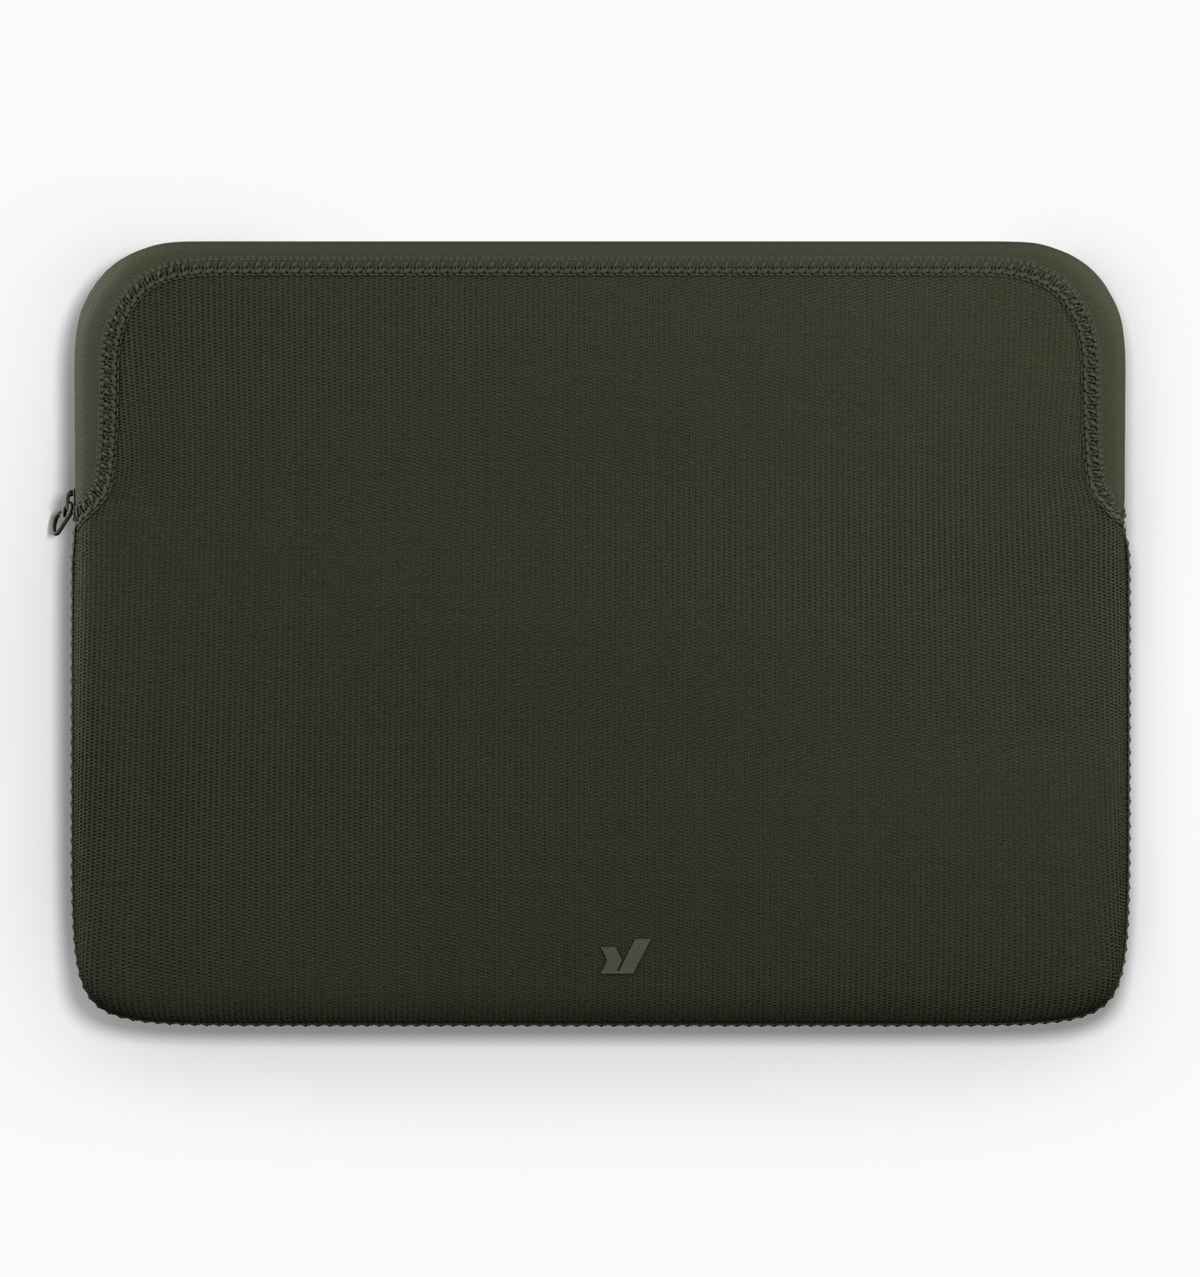 Rushfaster 13" Zippered Laptop Sleeve - Green